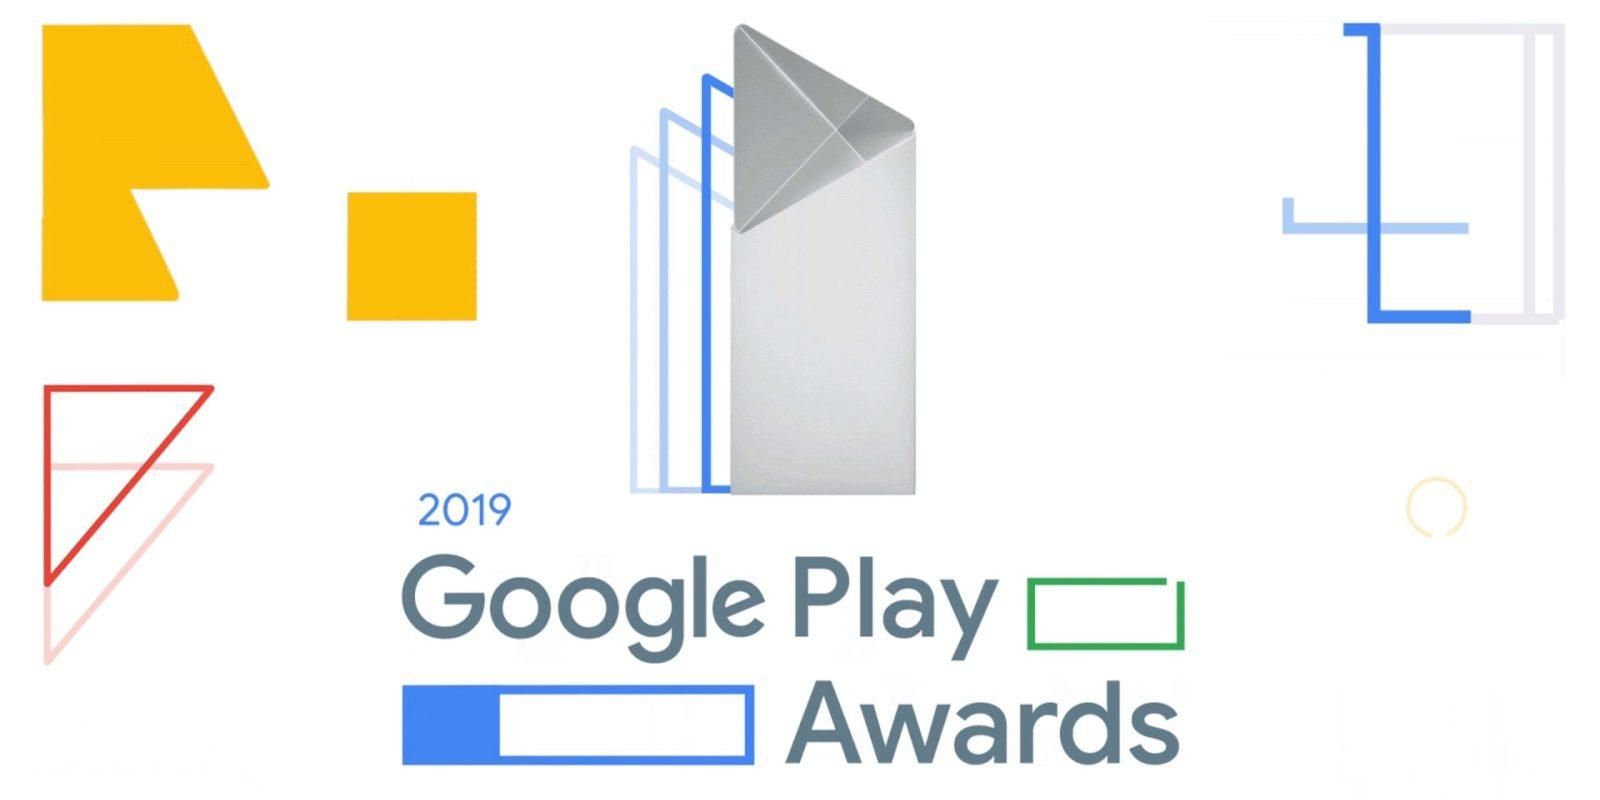 Объявили победителей премии Google Play Awards 2019: список лучших приложений